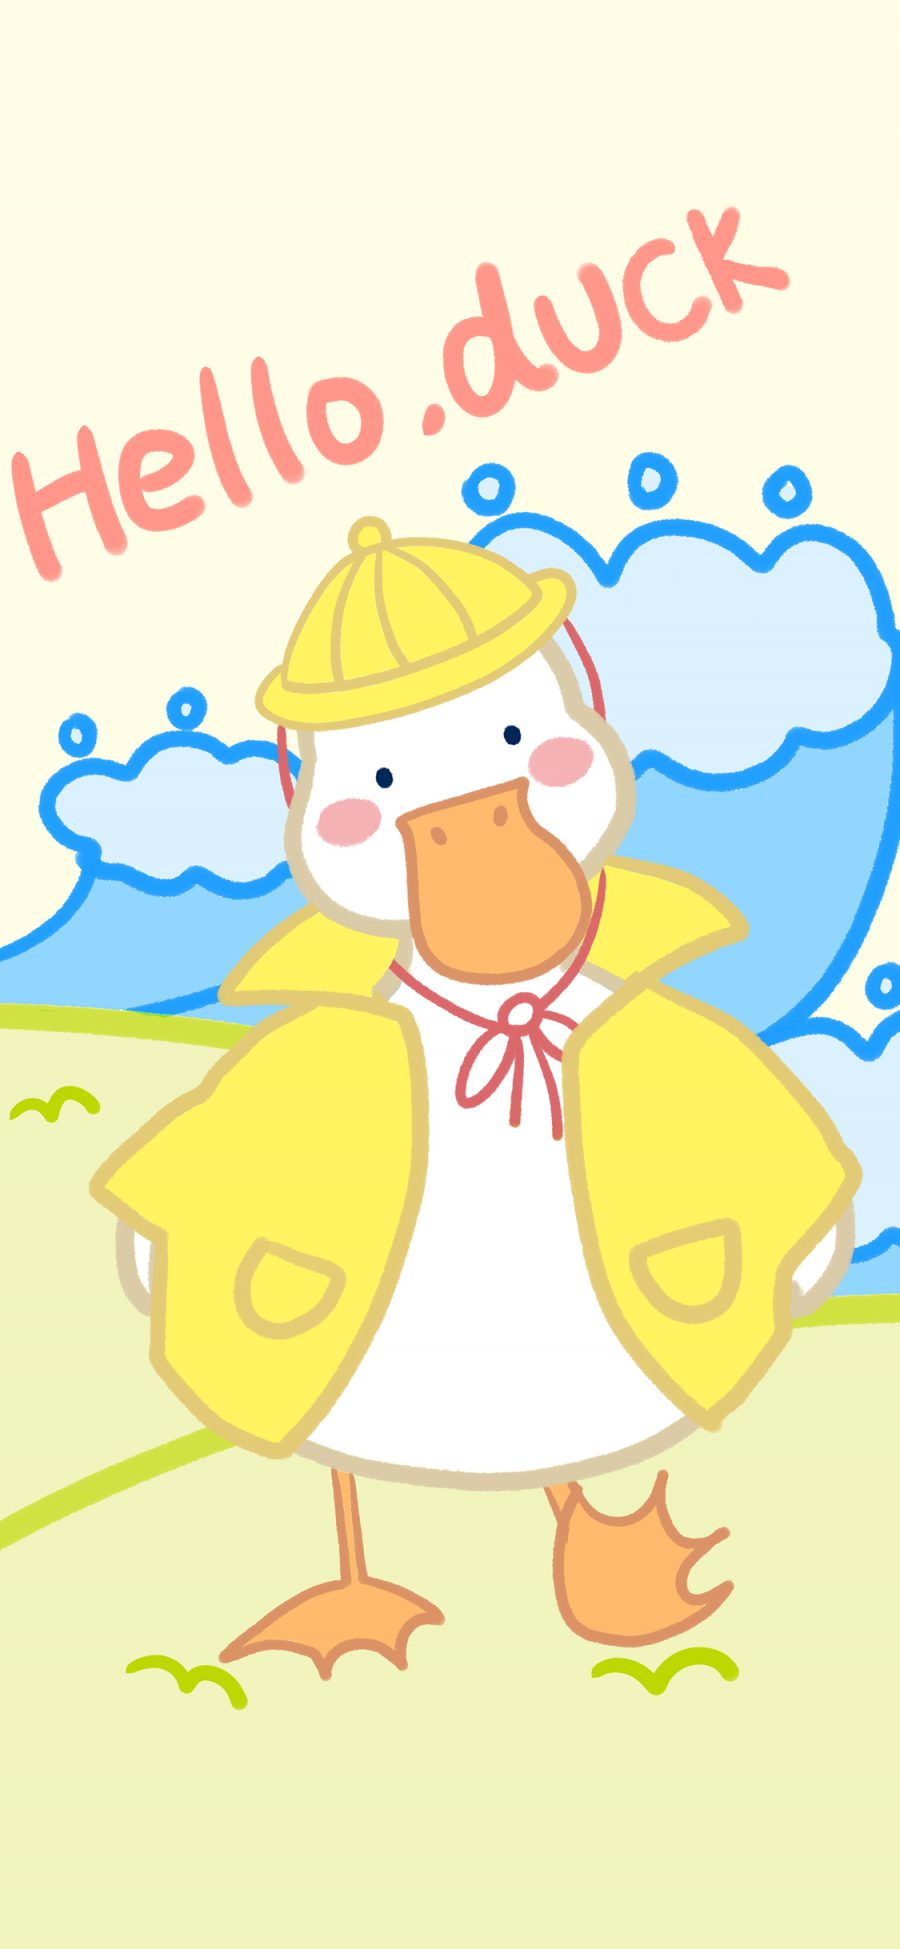 [2436×1125]鸭子 hello duck 卡通 苹果手机动漫壁纸图片